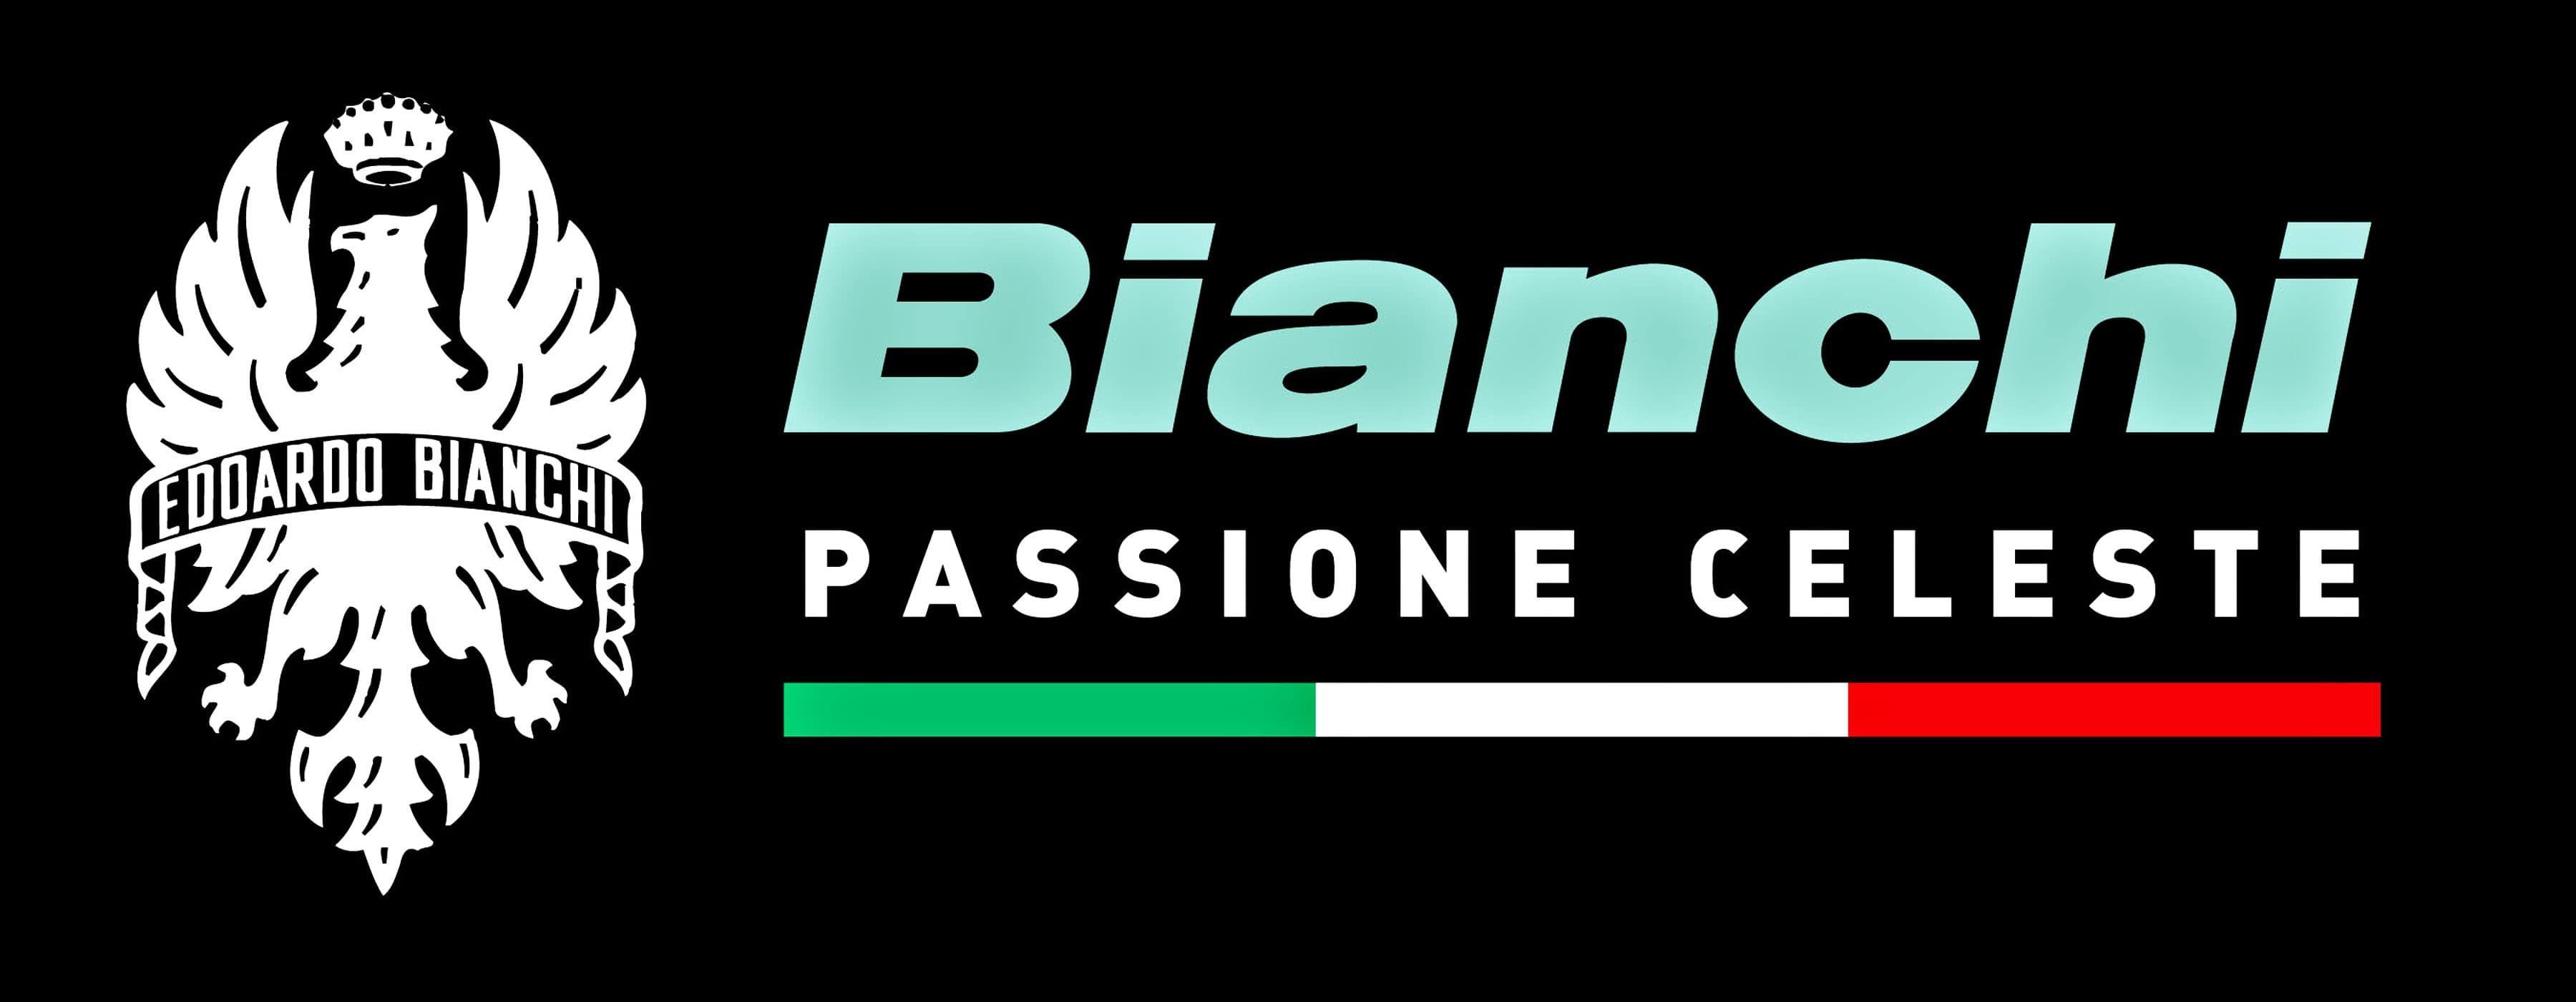 Bianchi Logo - Bianchi Logo Motorcycles. Motorcycle Logos. Bike logo, Motorcycle